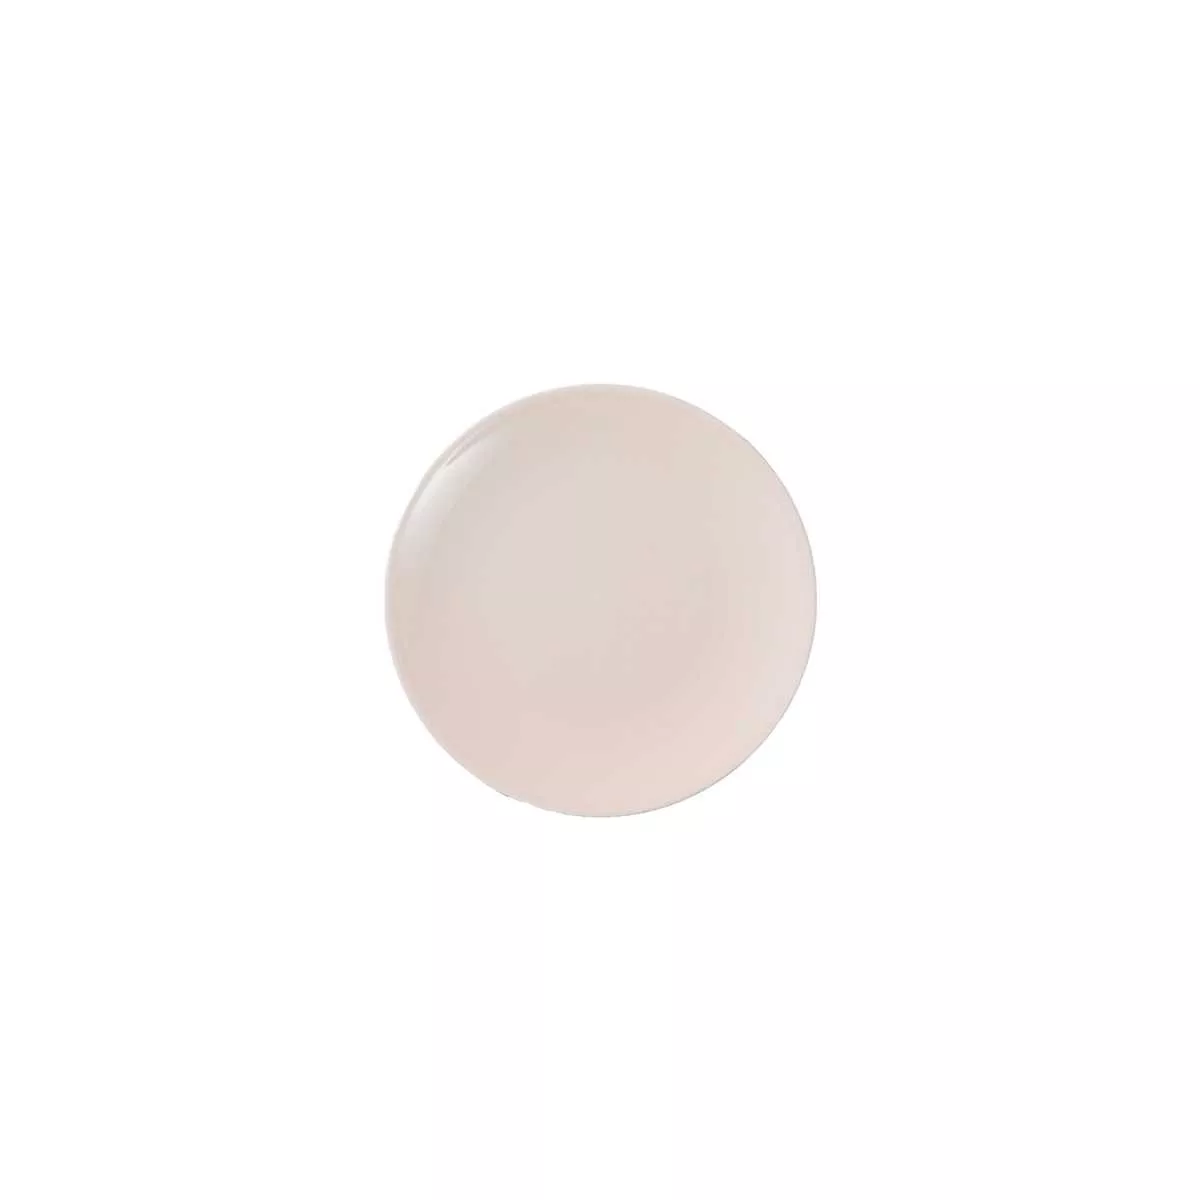 Тарелка Dibbern Pastell Powder Pink, диаметр 28 см (03 028 115 04) - Фото nav 1